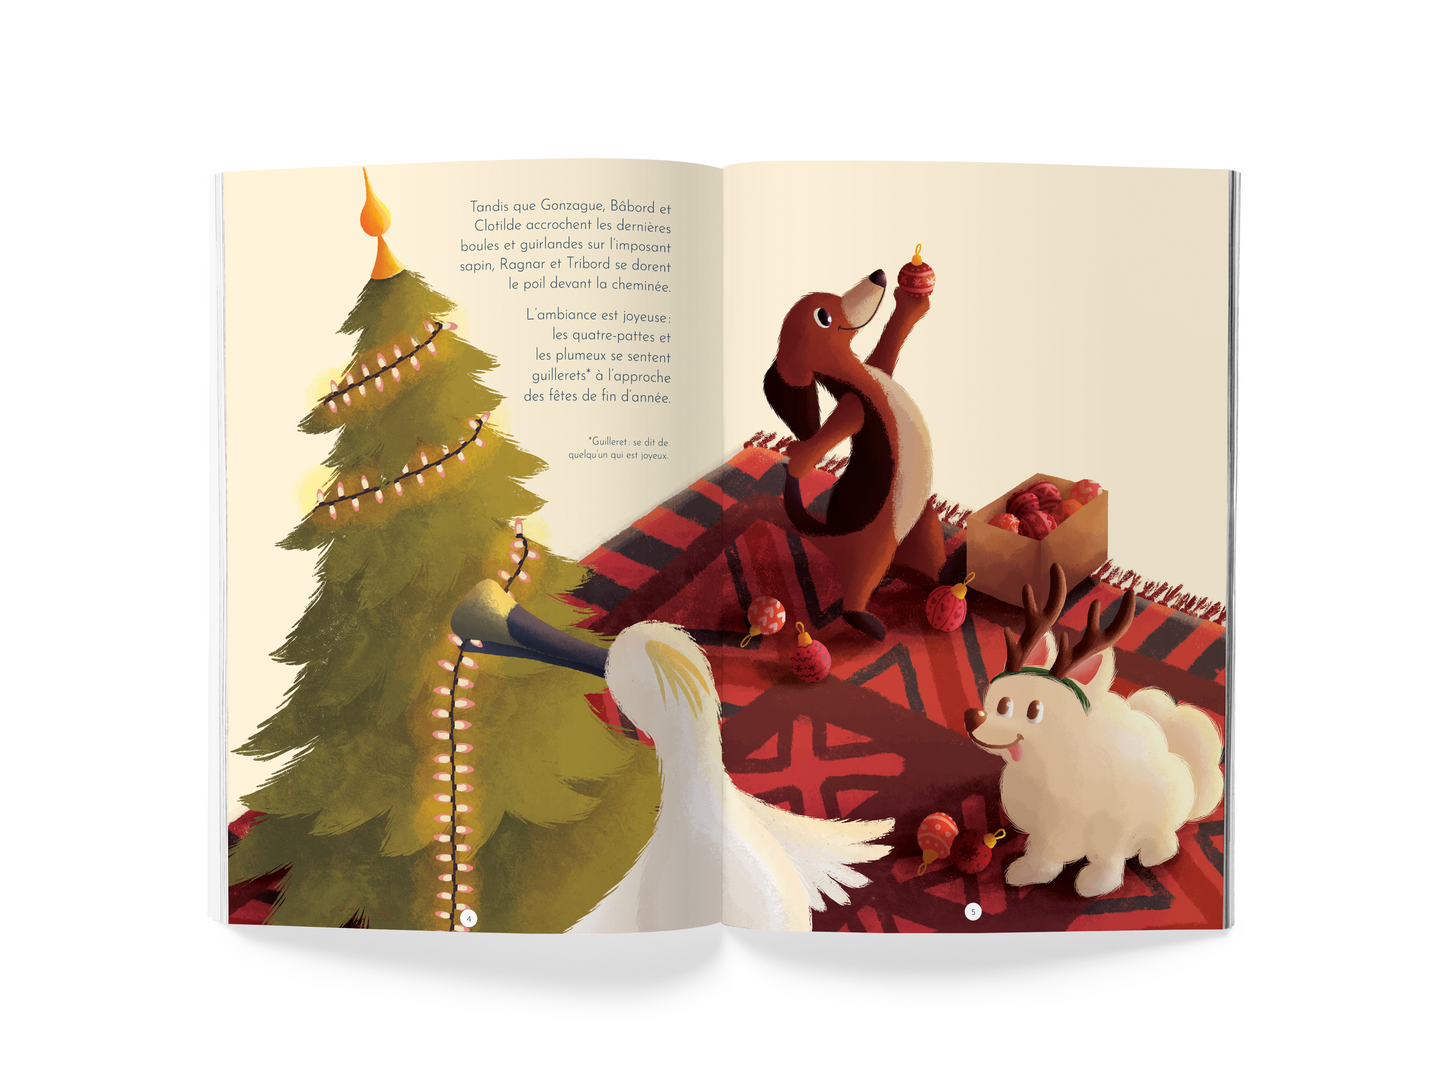 Le livre du Gang de Babette - à partir de 6 ans - Spécial Noël !